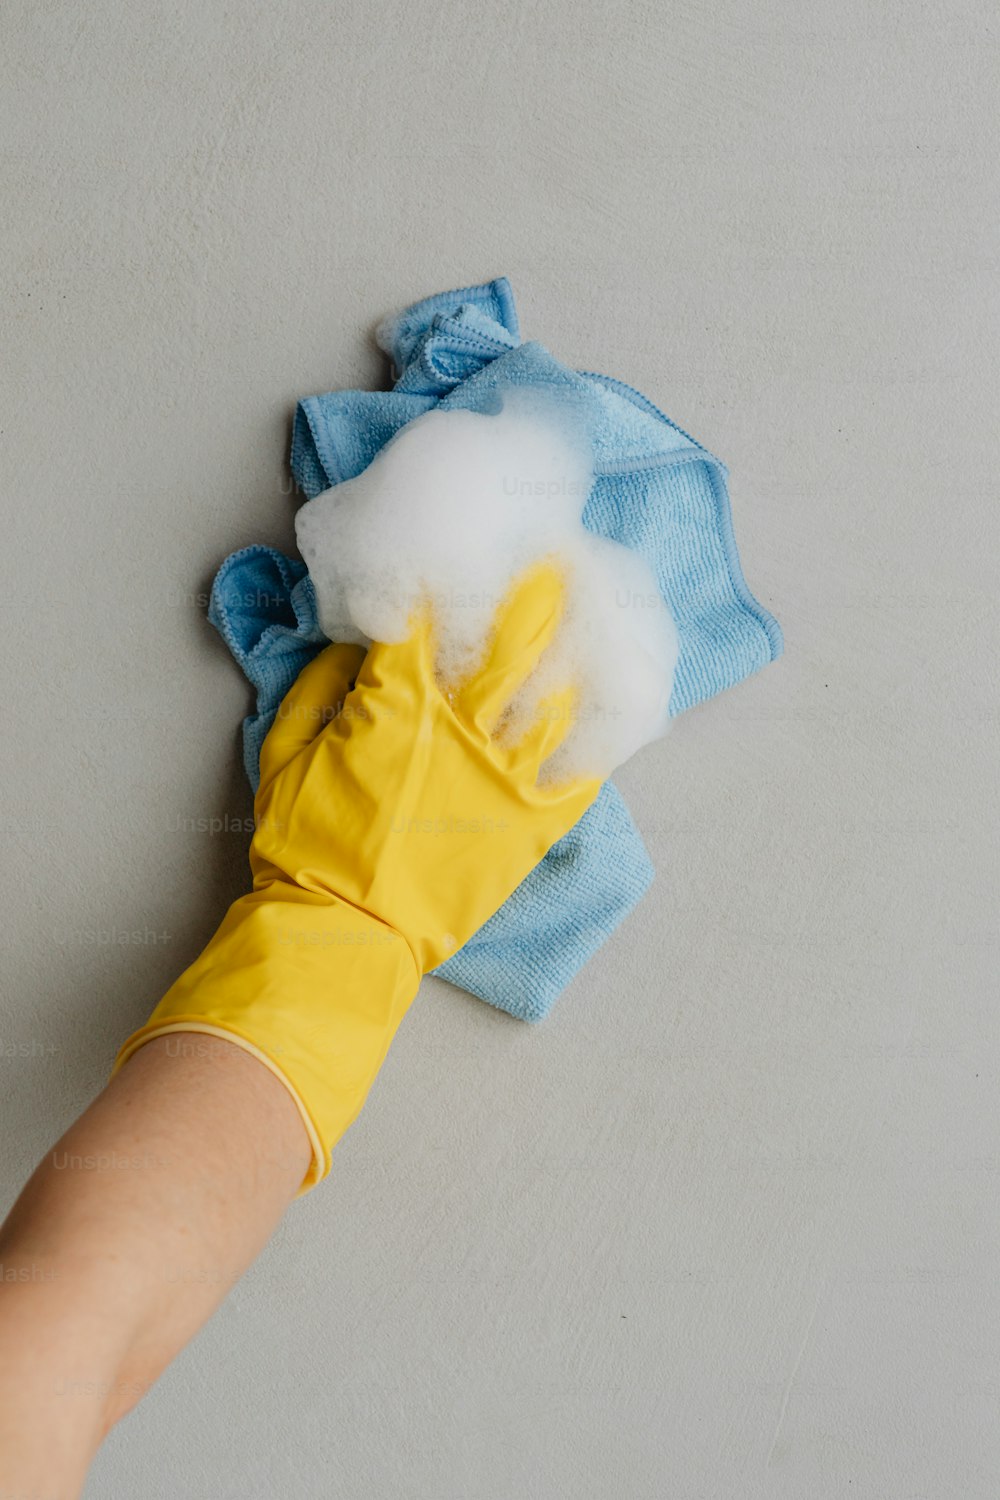 la main d’une personne portant des gants de caoutchouc jaunes et un chiffon de nettoyage